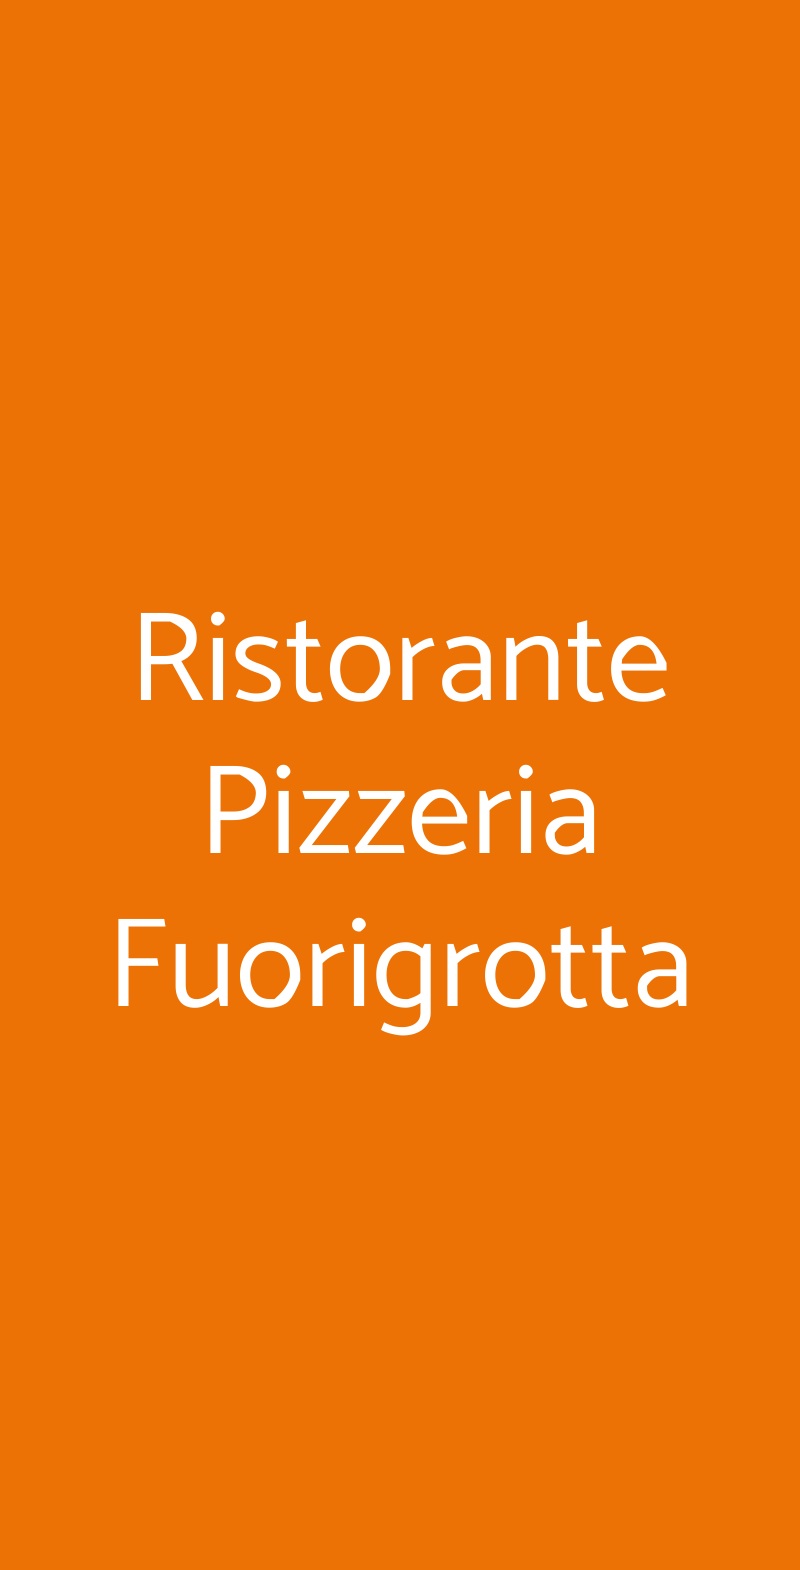 Ristorante Pizzeria Fuorigrotta Genova menù 1 pagina